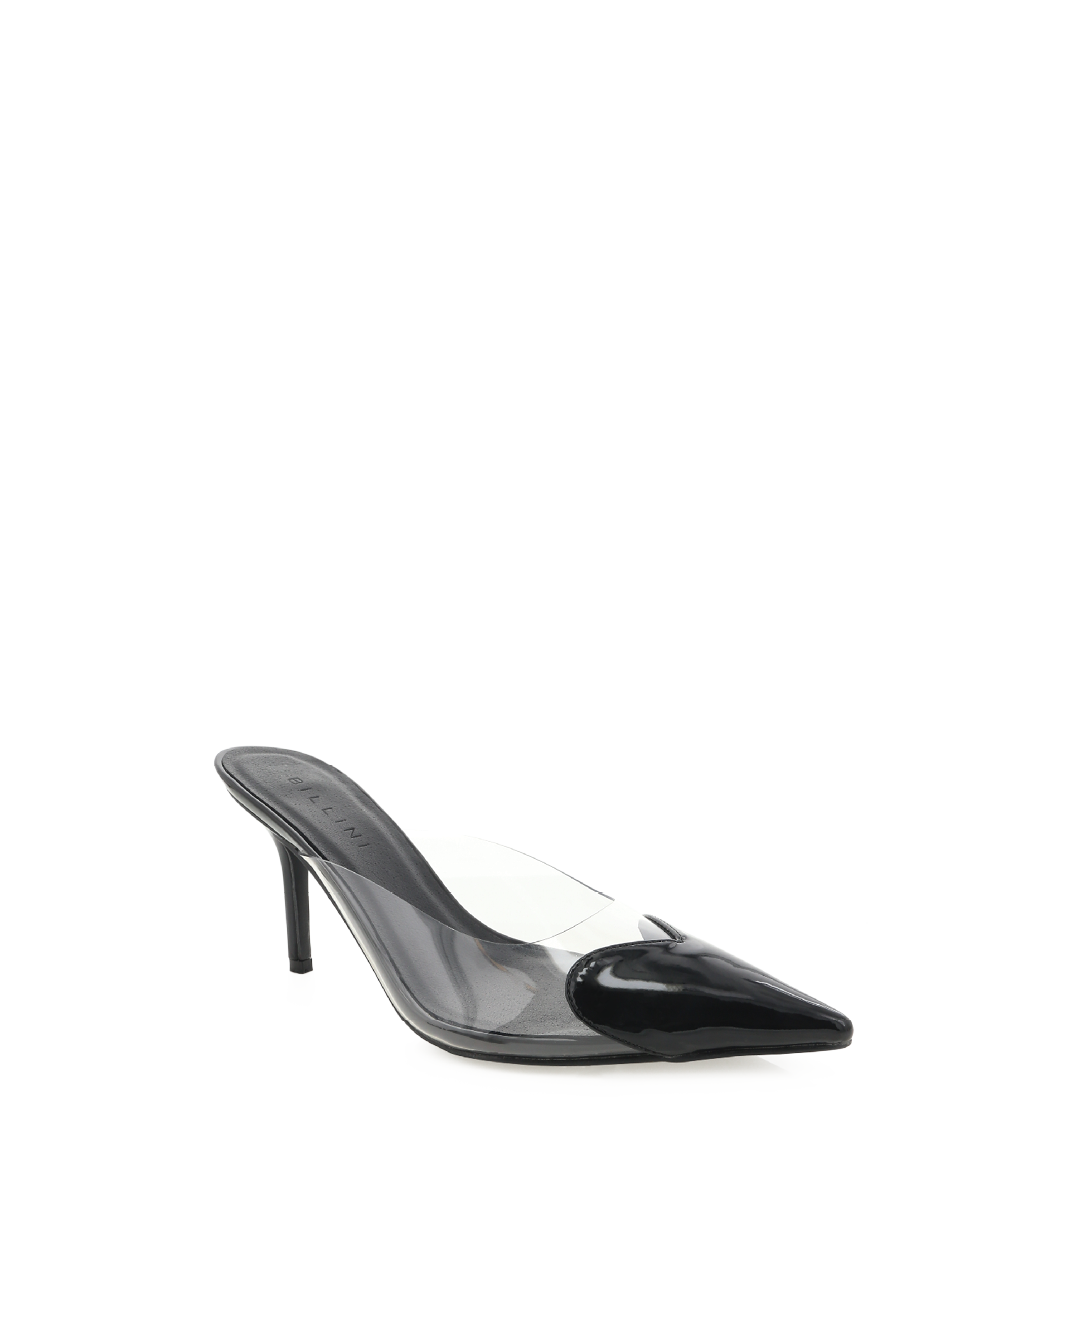 KARESS - BLACK PATENT-CLEAR-Heels-Billini-BILLINI USA